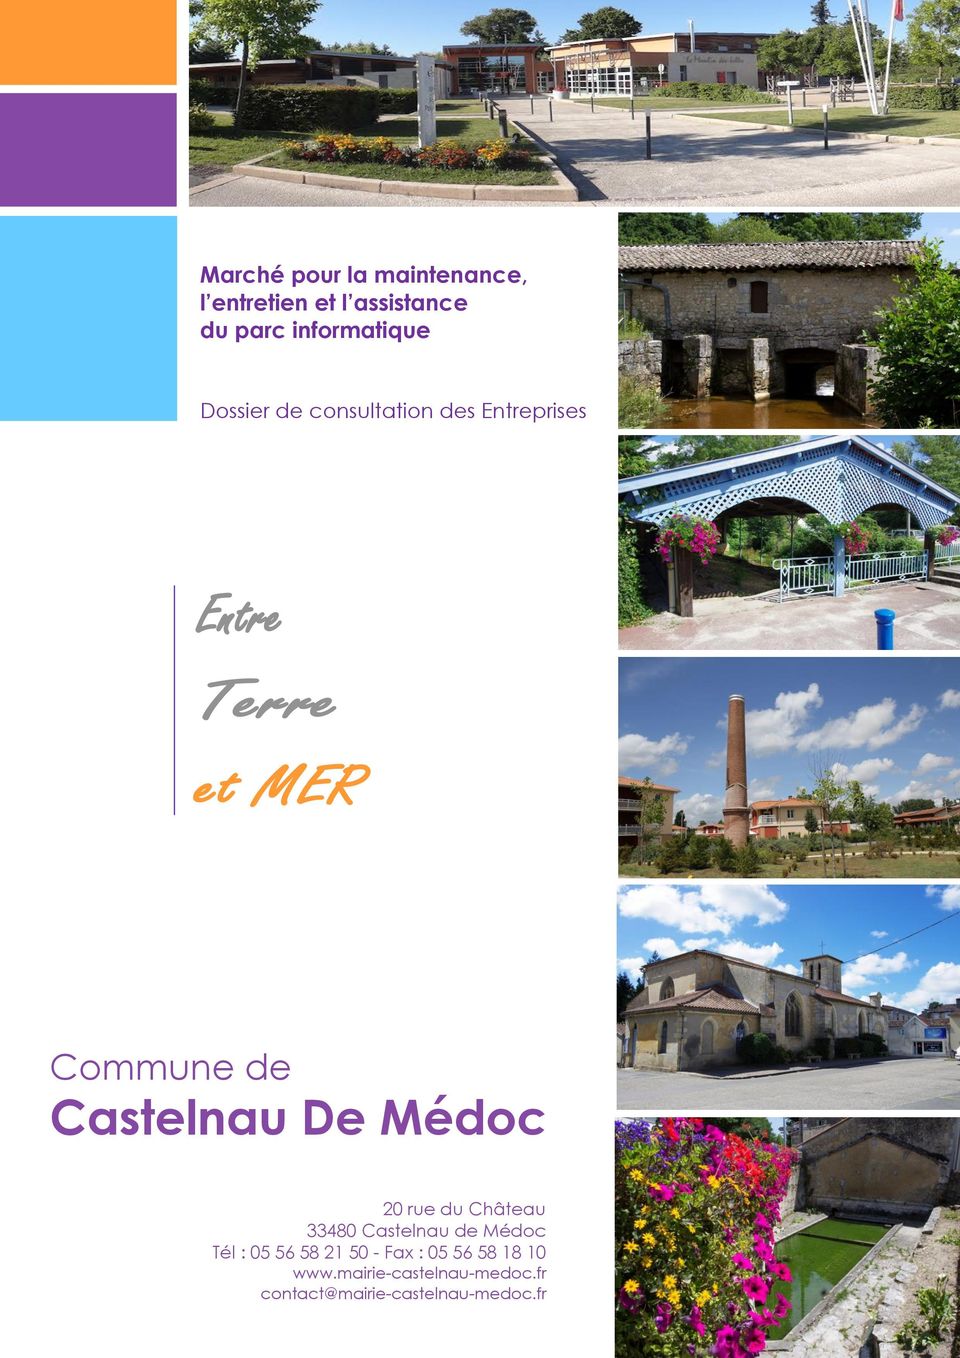 Castelnau De Médoc 20 rue du Château 33480 Castelnau de Médoc Tél : 05 56 58